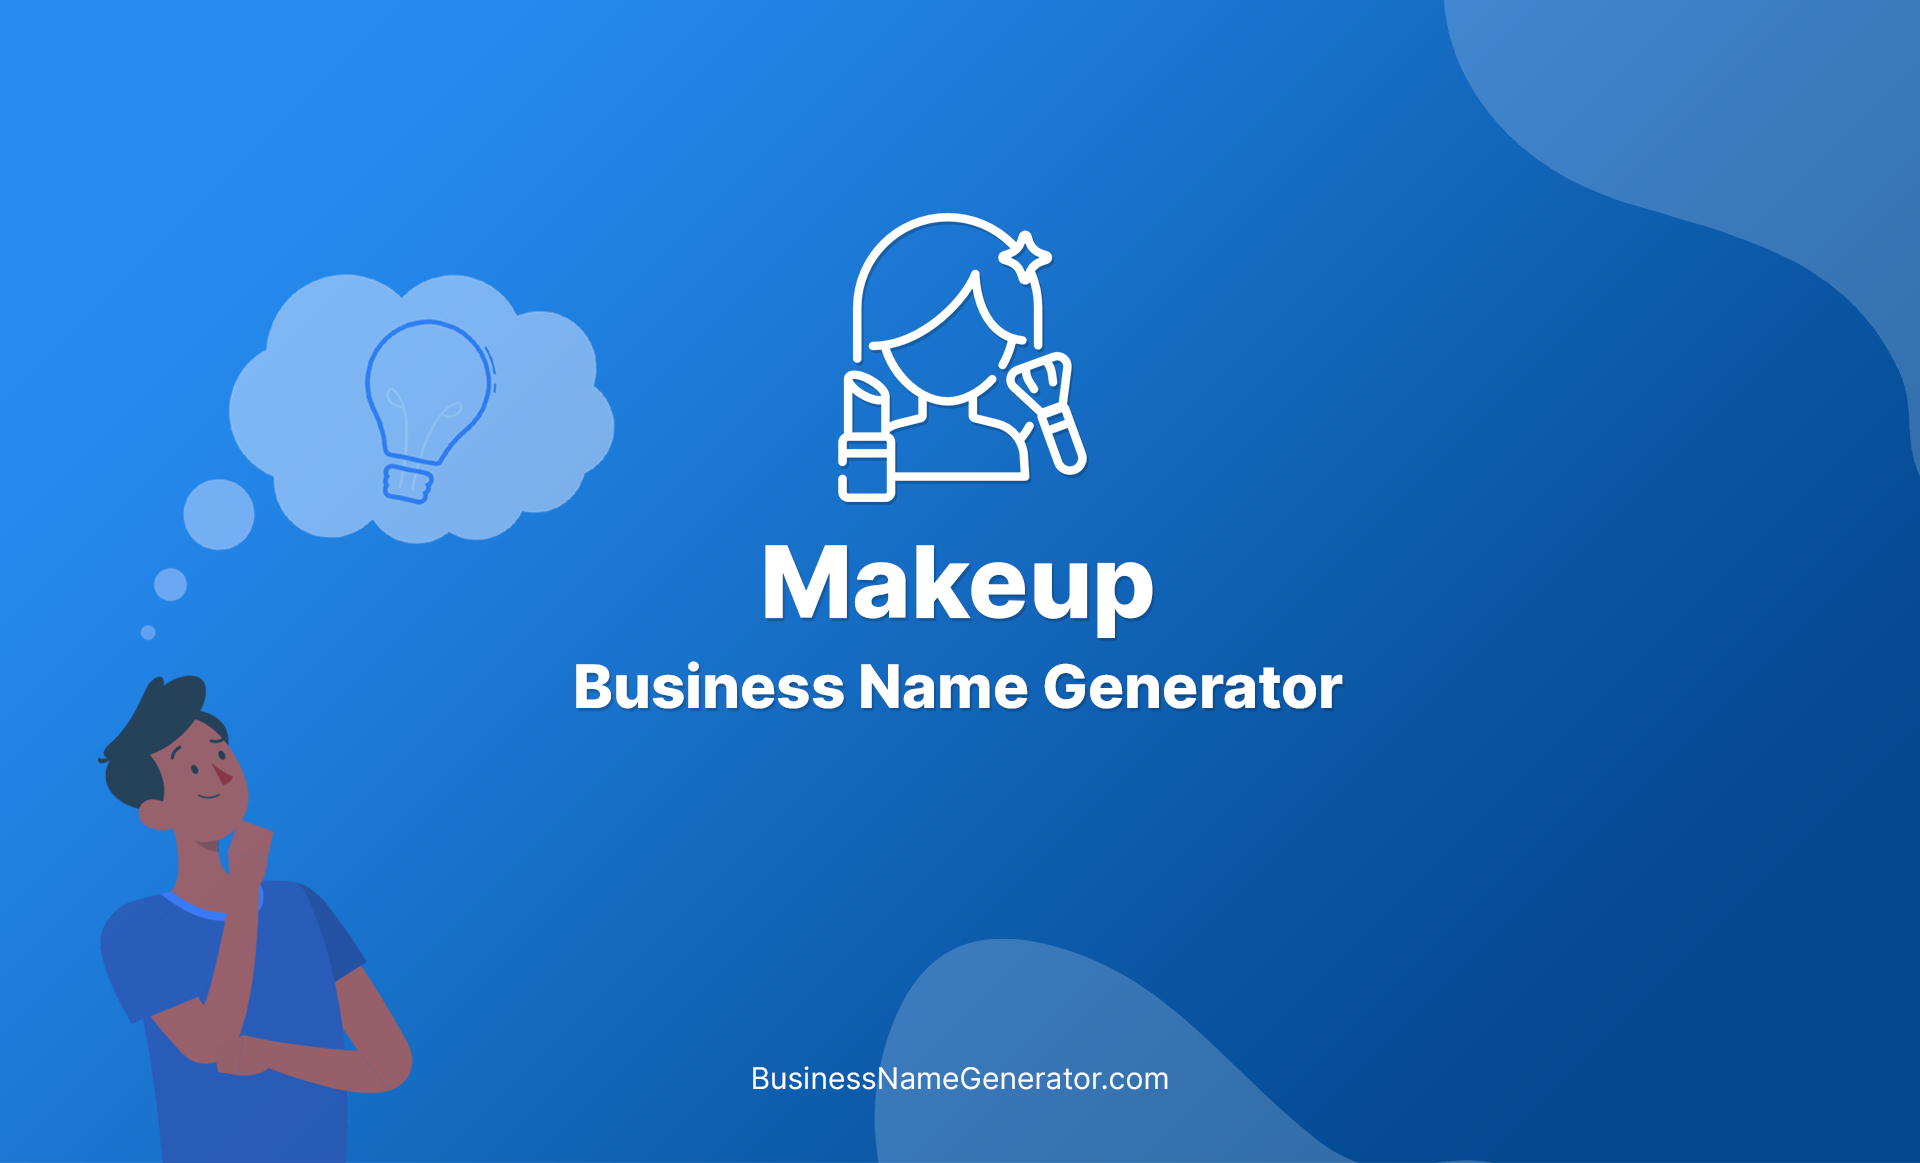 Makeup Business Name Generator